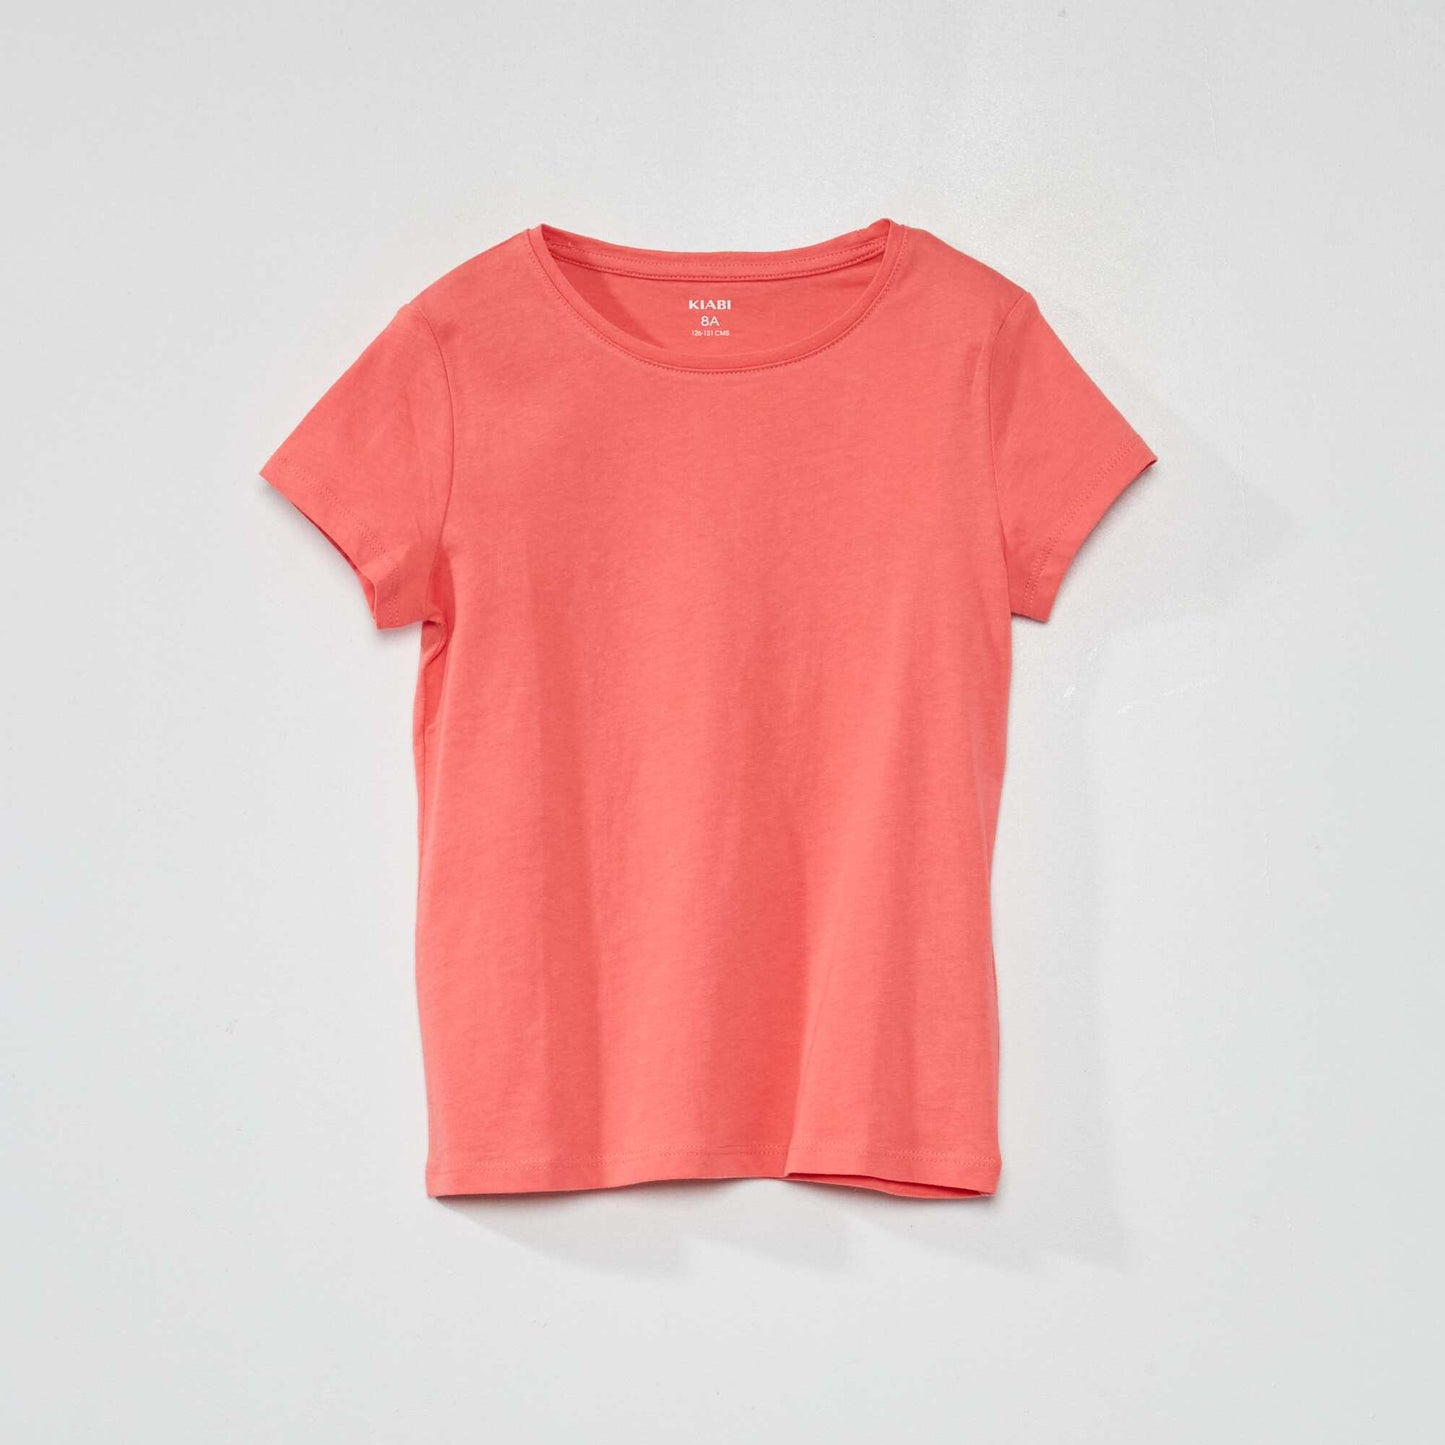 Plain jersey T-shirt pink